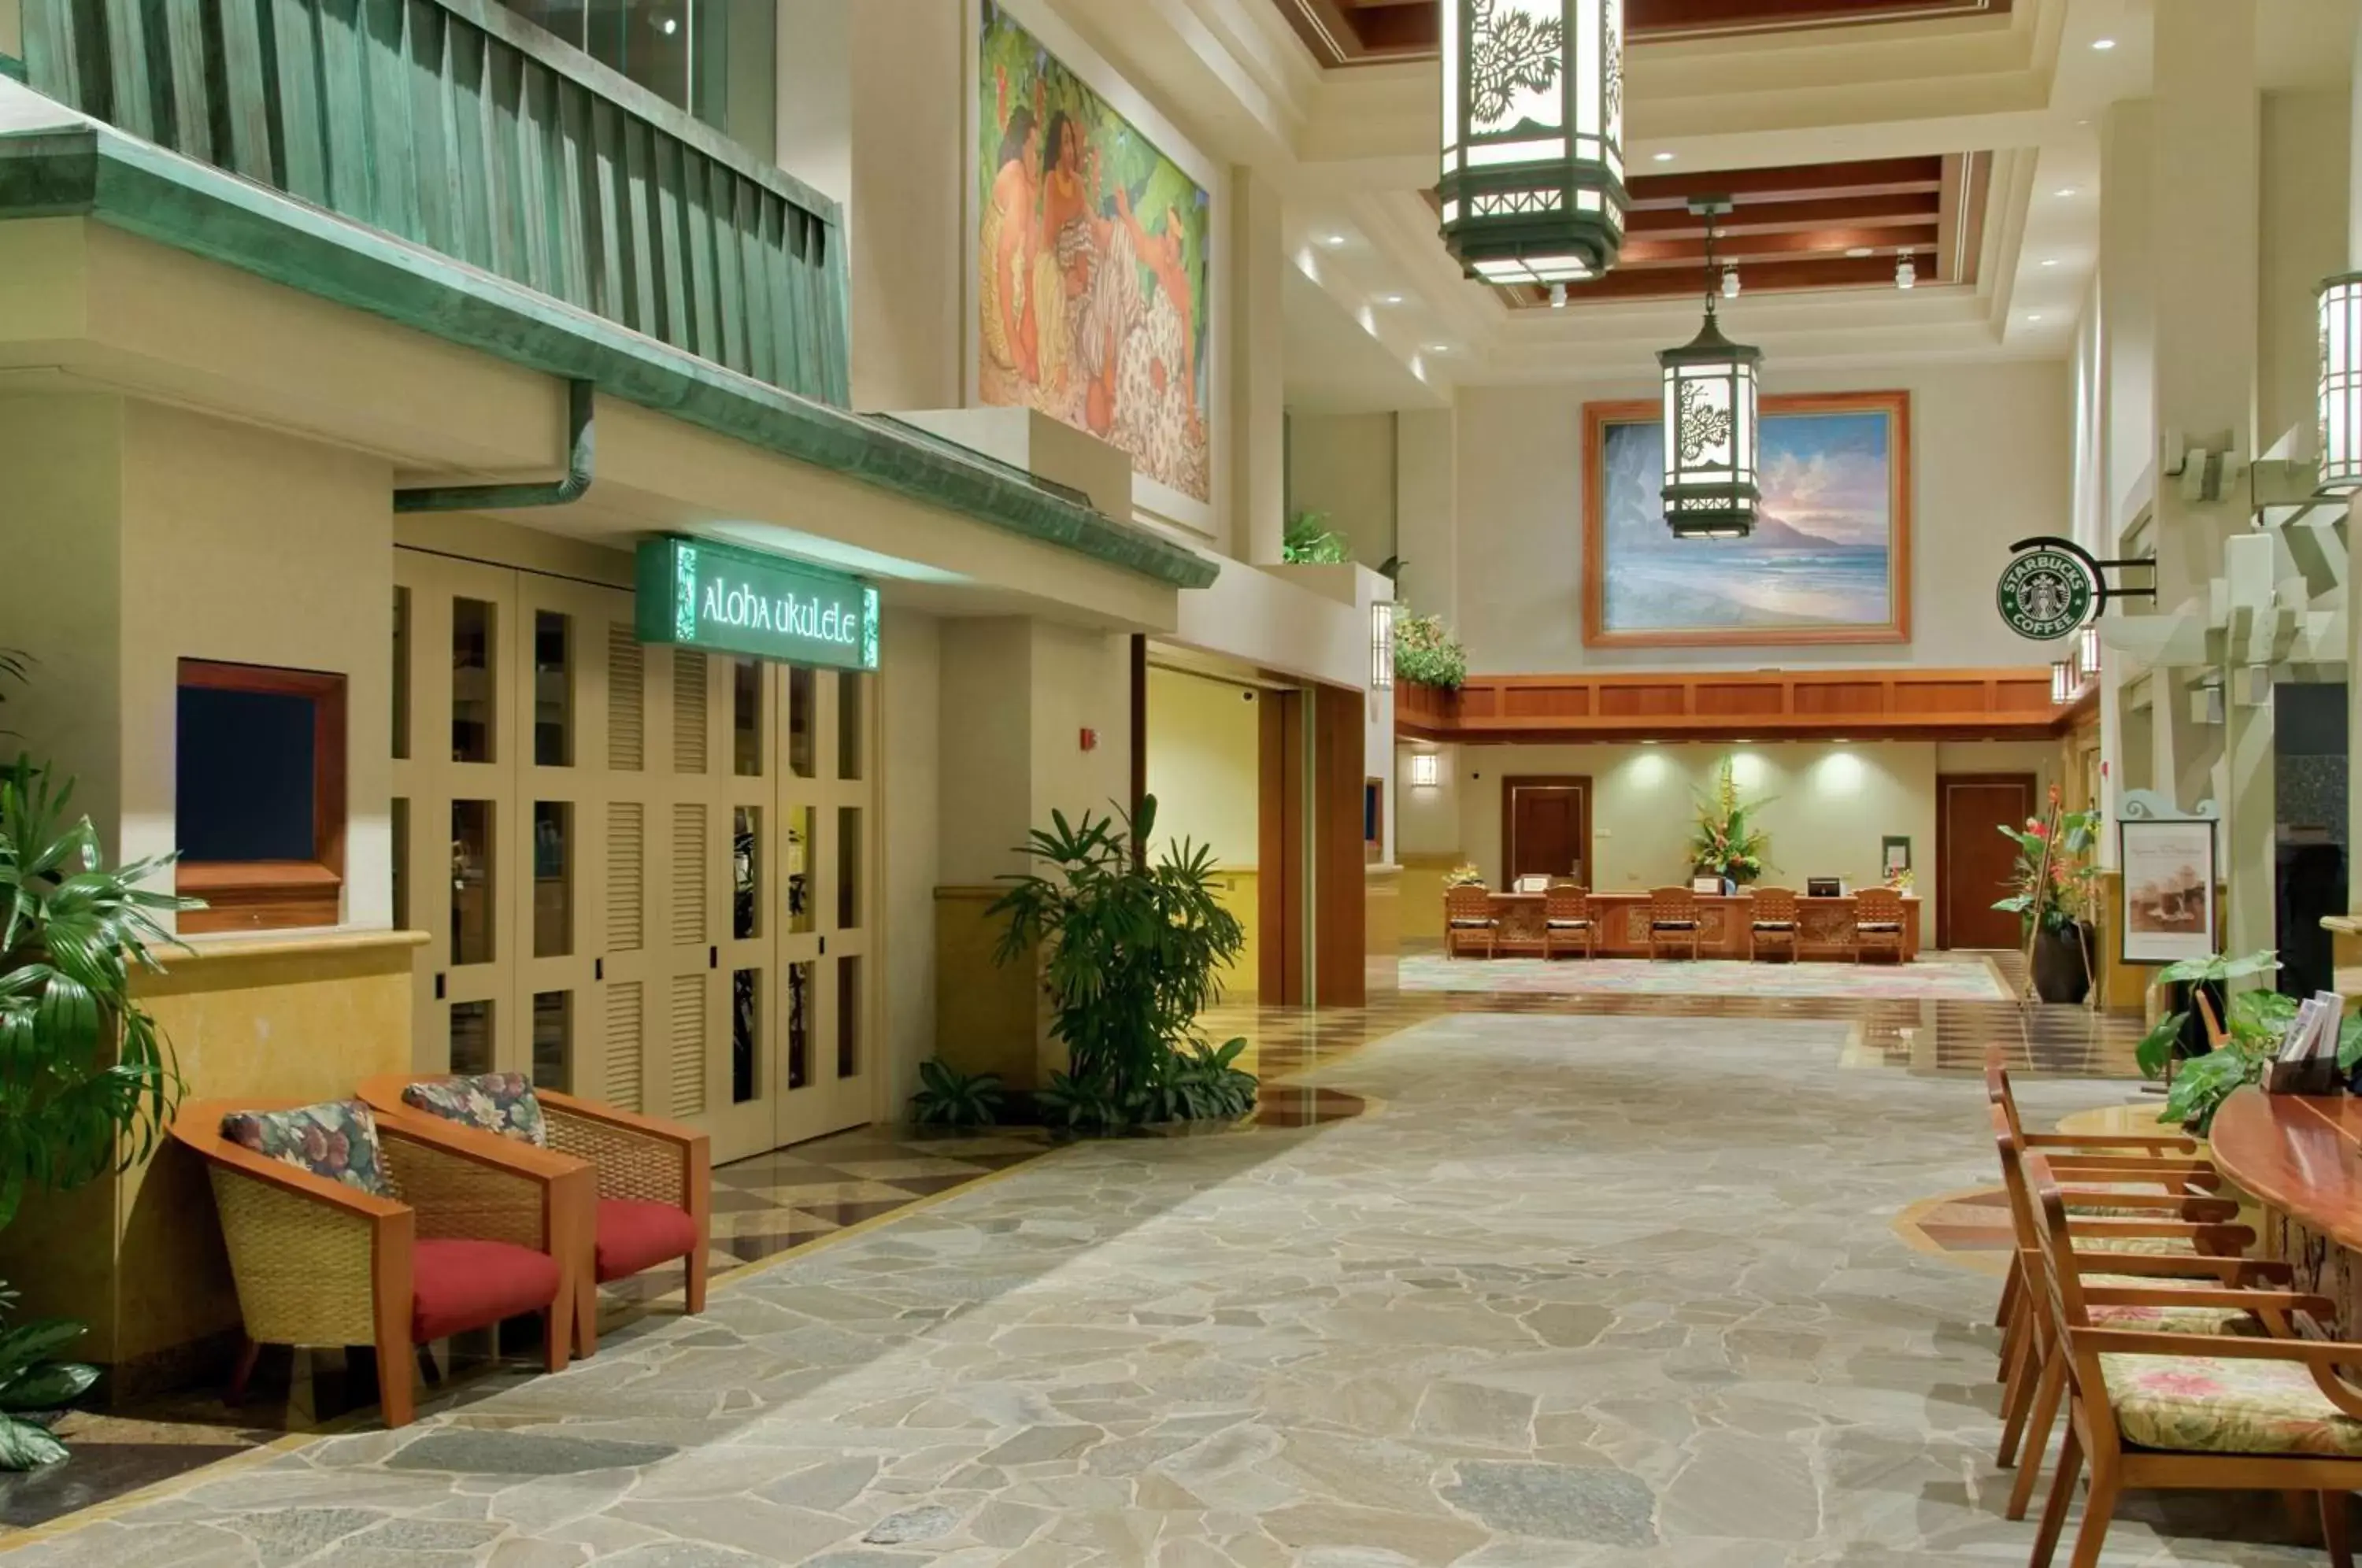 Lobby or reception in Hilton Hawaiian Village Waikiki Beach Resort